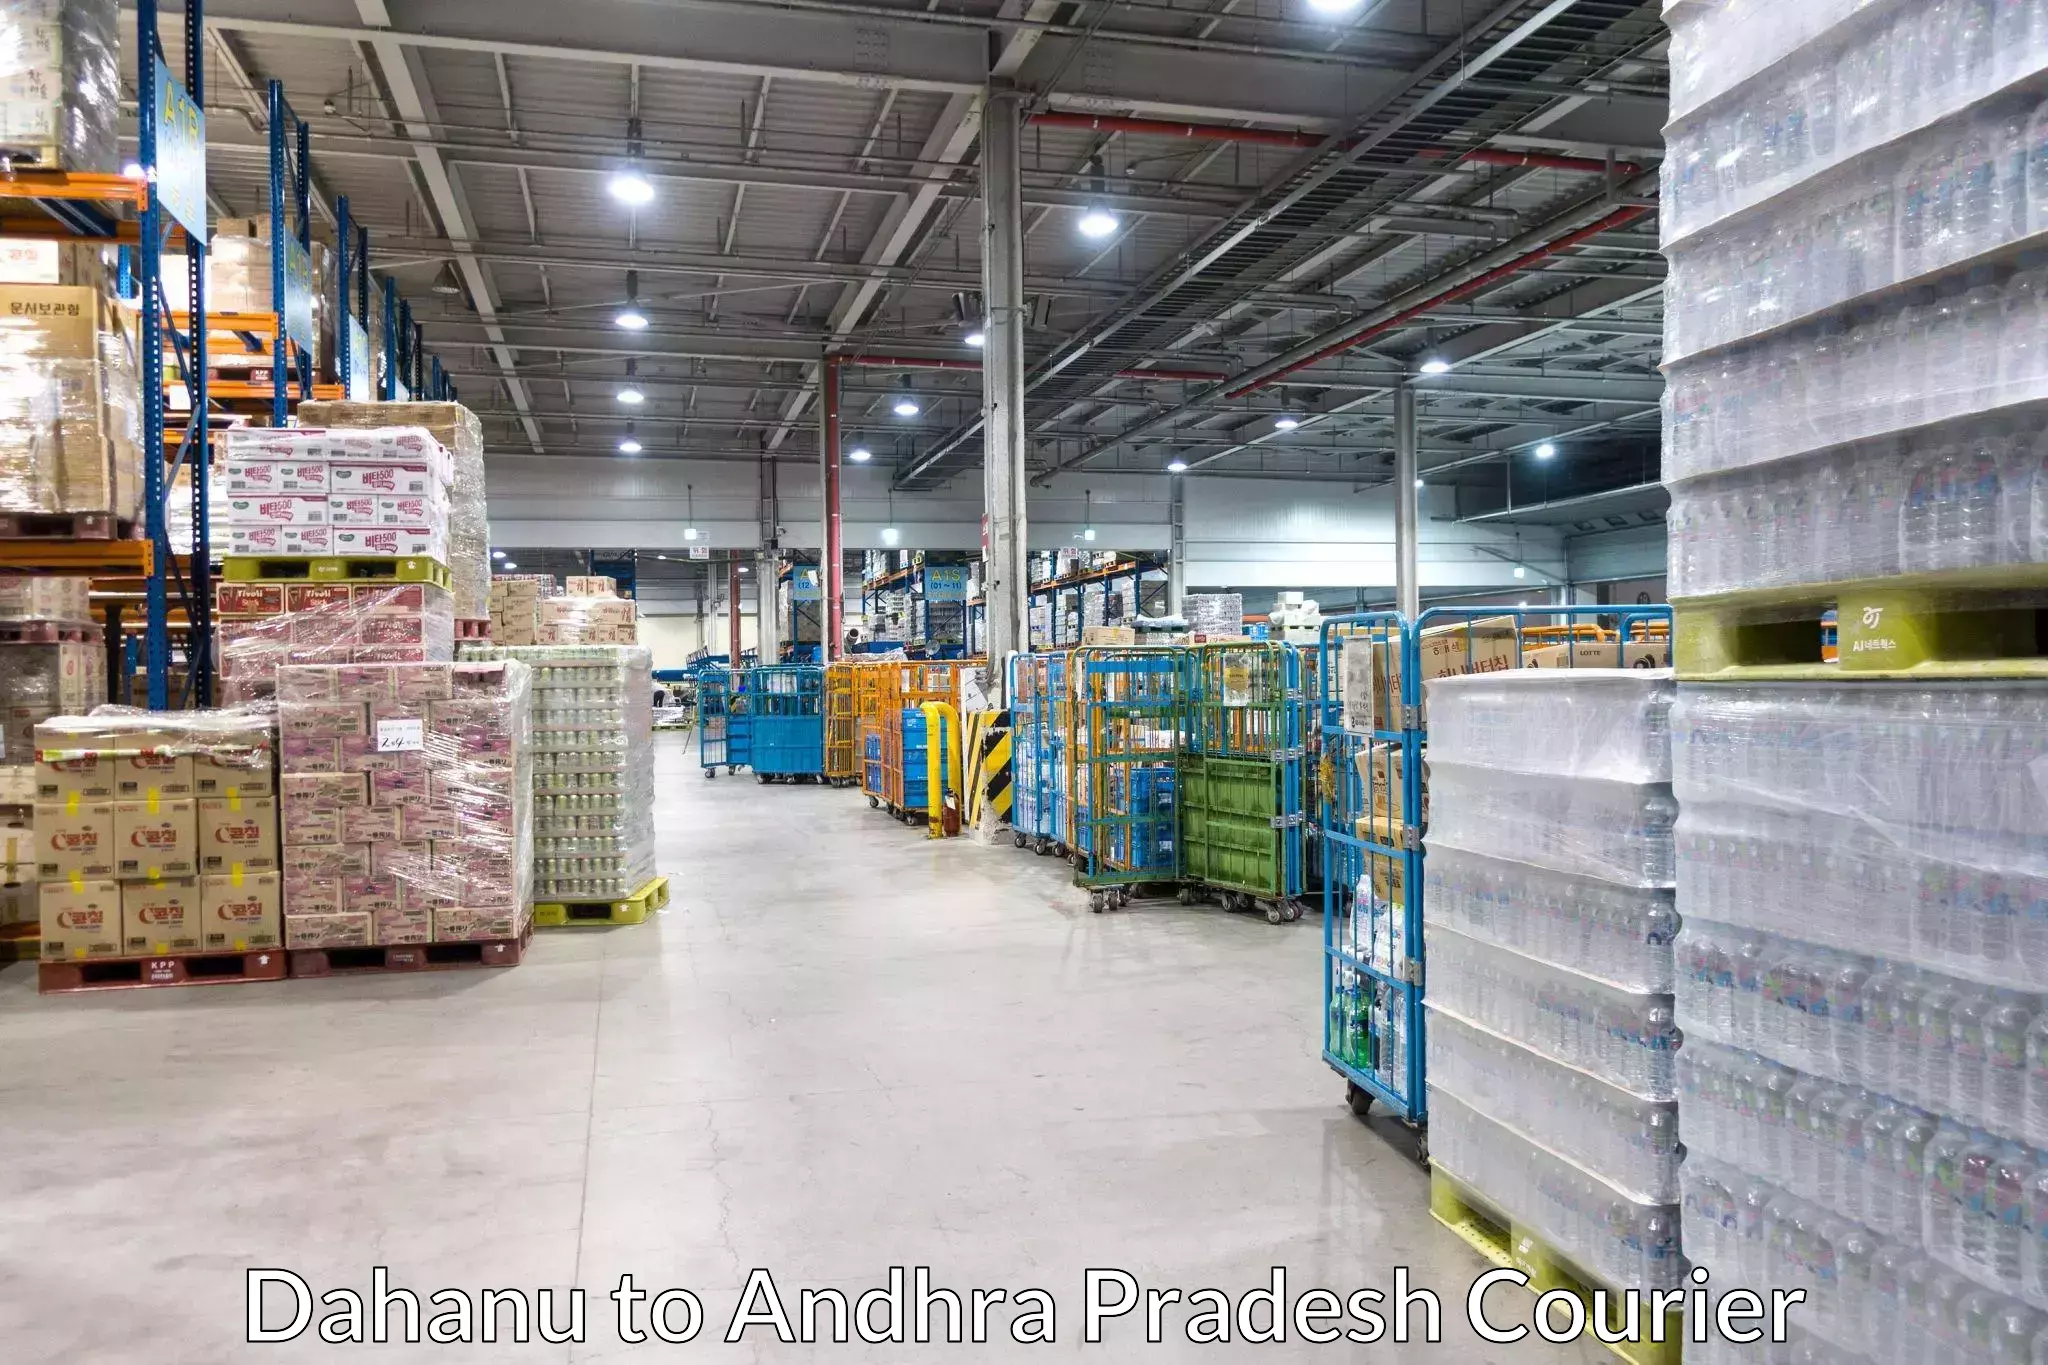 High-performance logistics Dahanu to Andhra Pradesh